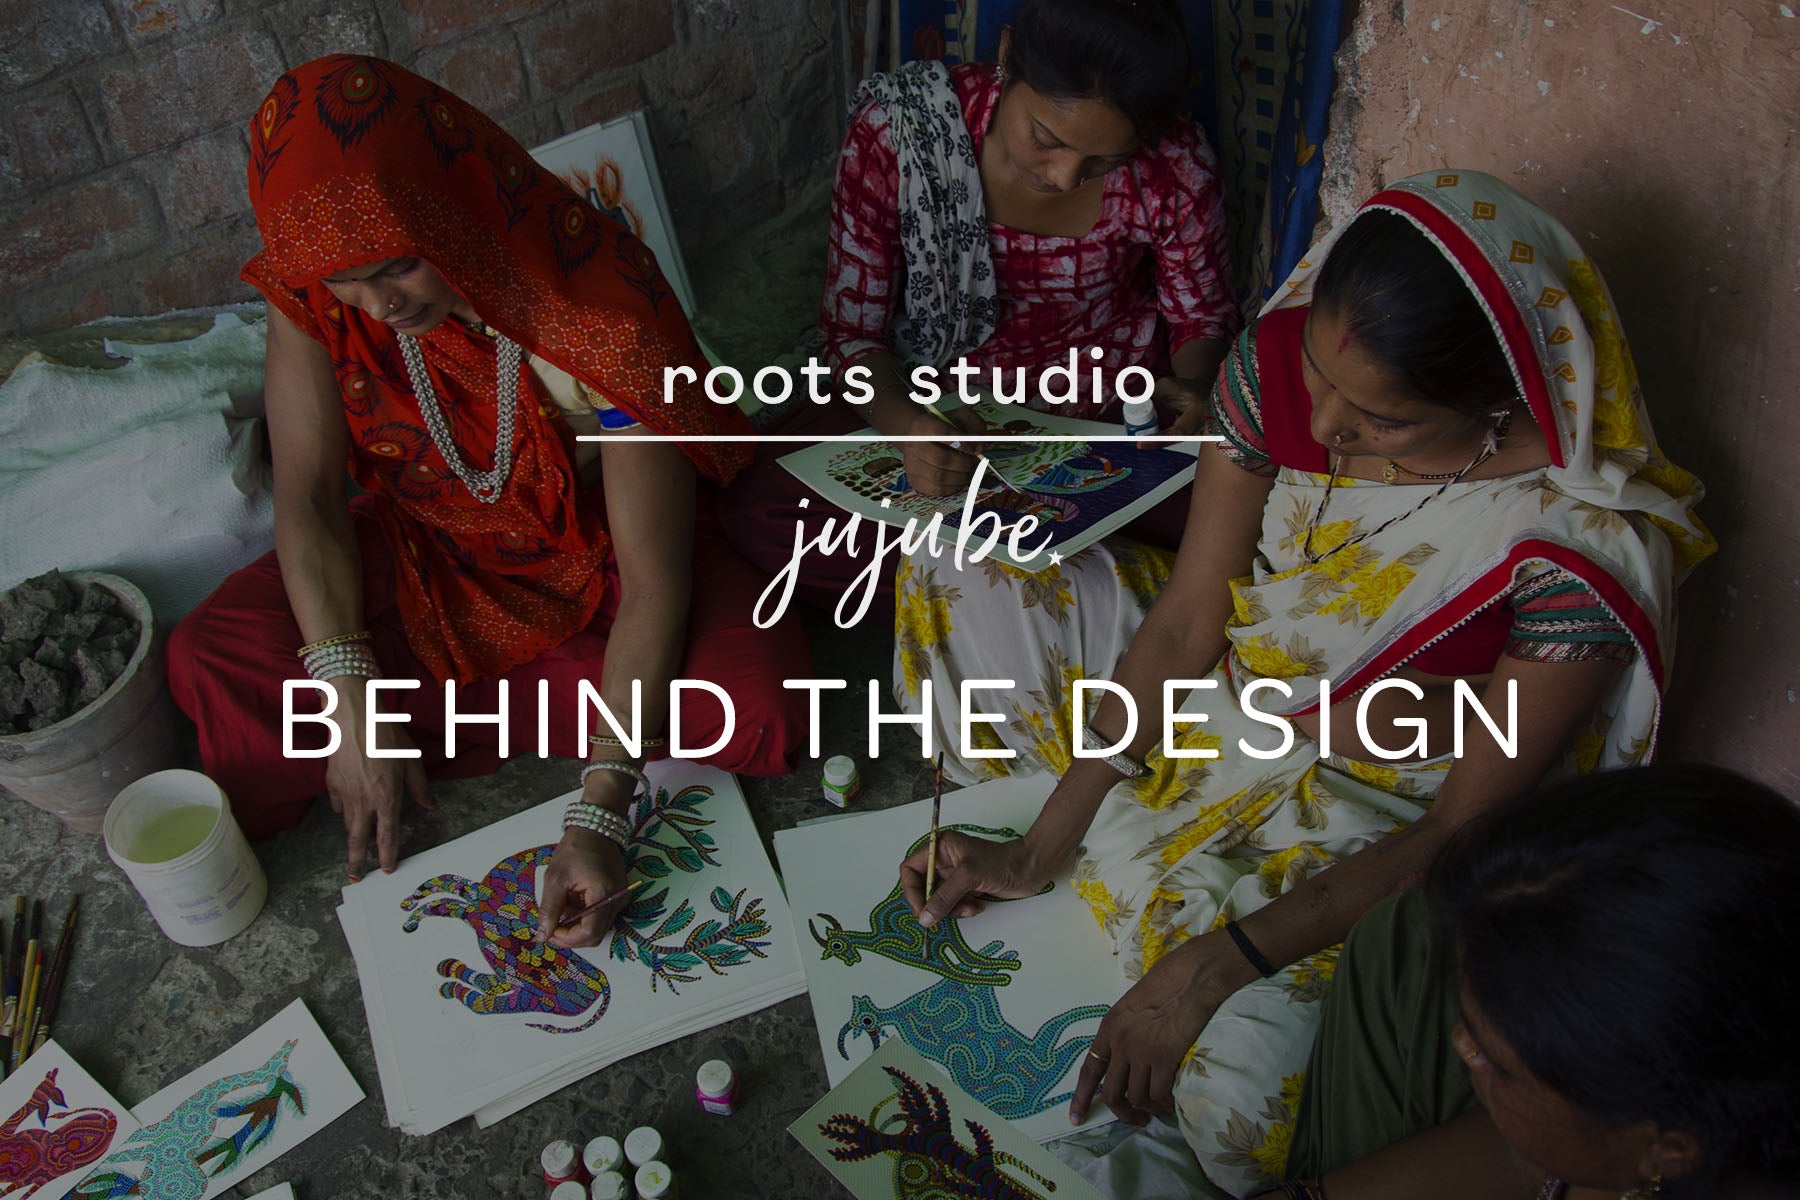 Roots Studio: Behind the Design